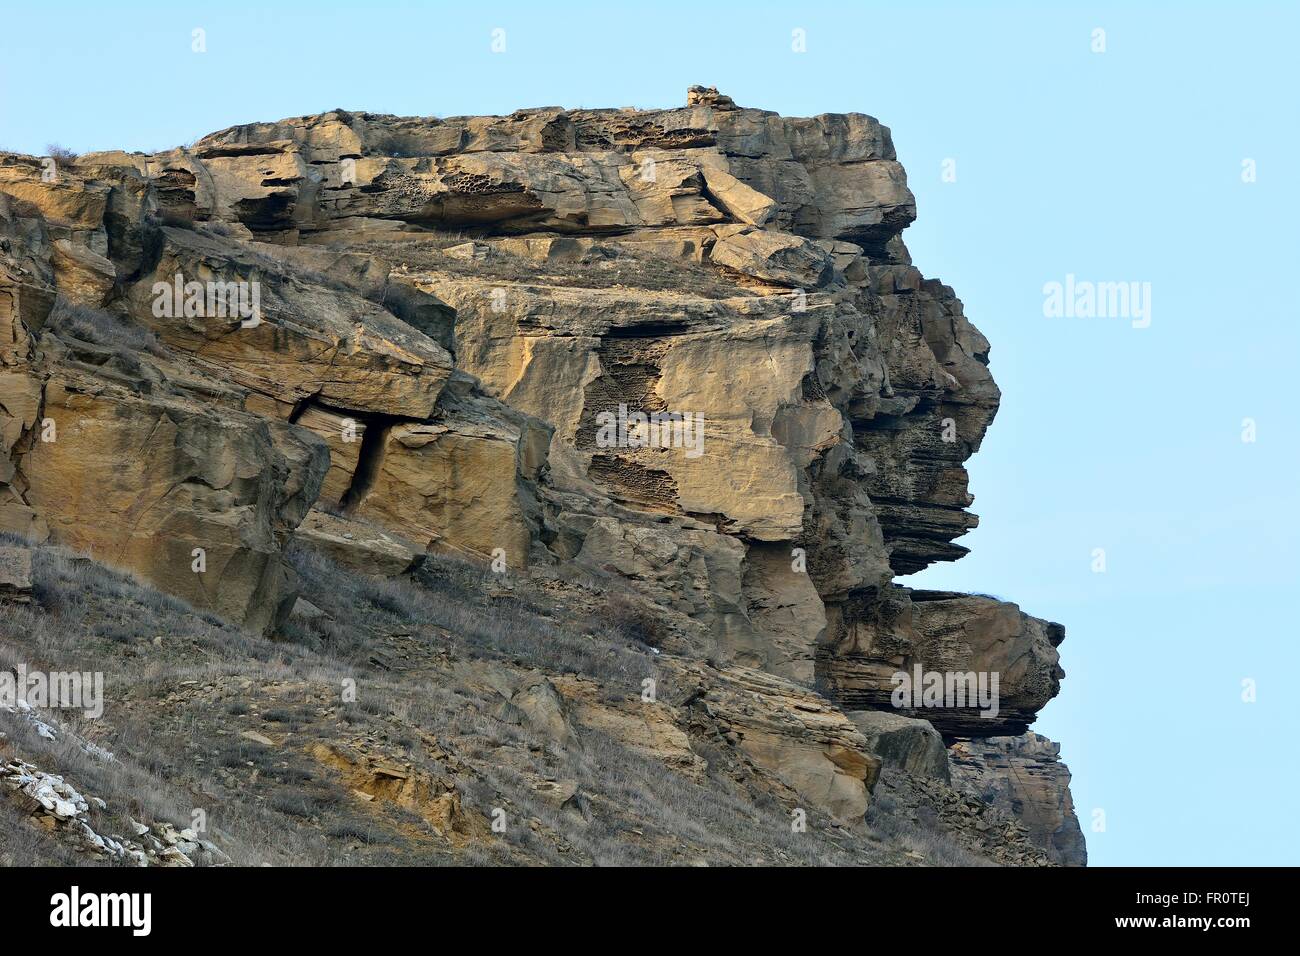 Formazione di roccia conformata a testa. La formazione naturale che assomiglia a un isola di pasqua in testa le colline ad ovest di Baku in Azerbaijan Foto Stock